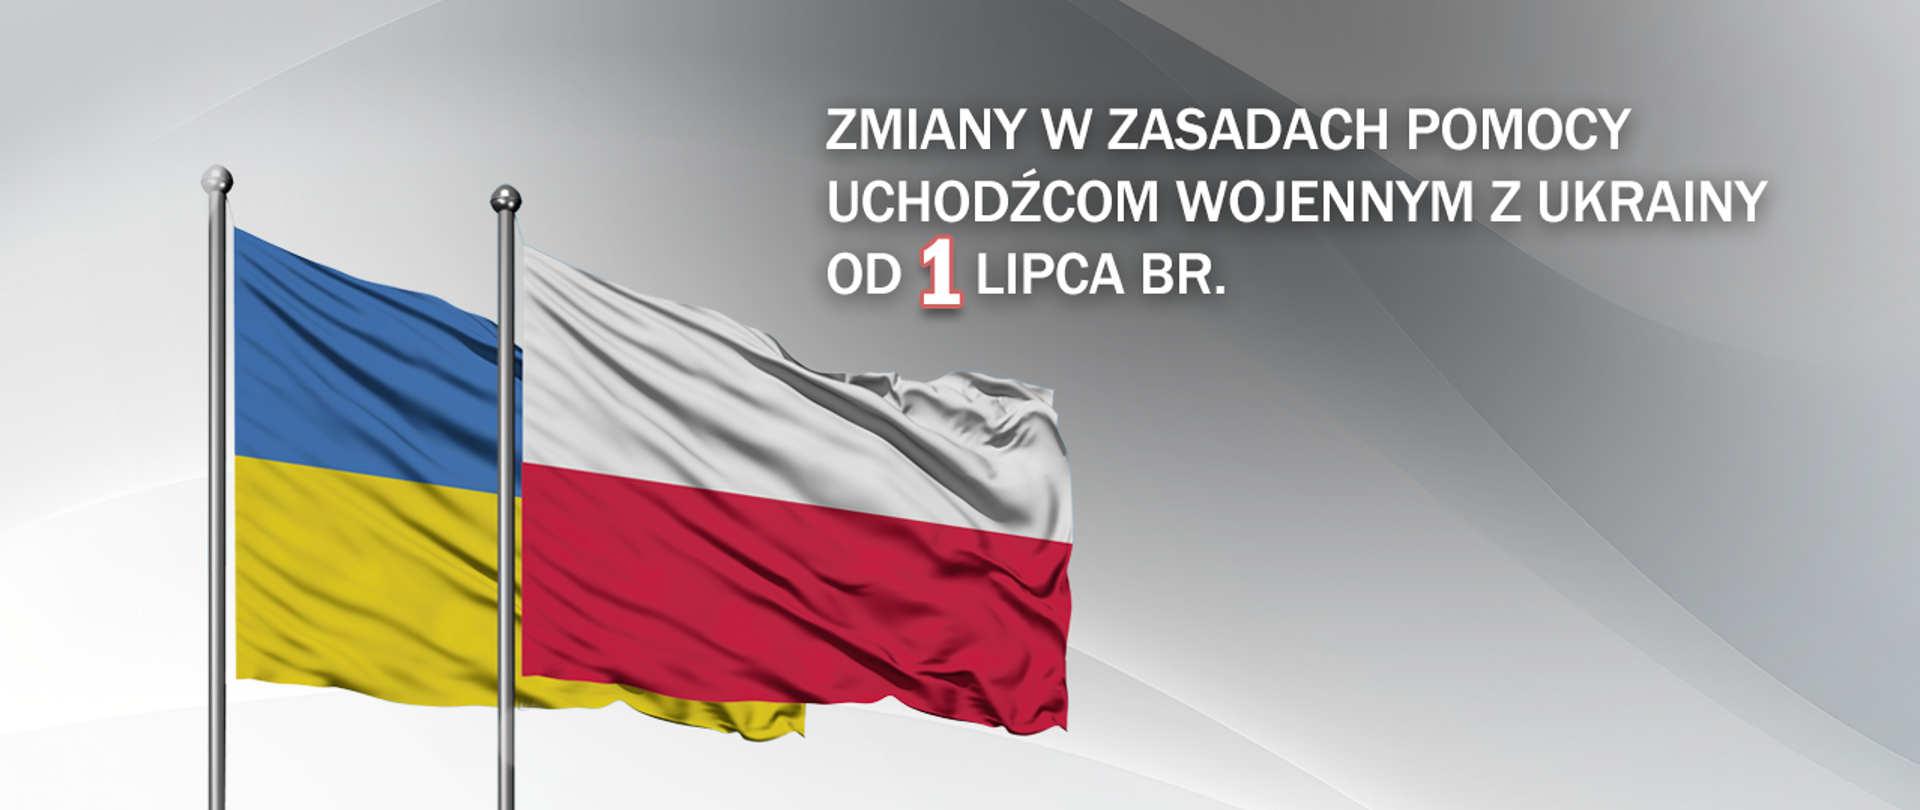 grafika na niej flaga polska i ukraińska, obok napis zmiany w zasadach pomocy uchodźcom wojennym z Ukrainy od 1 lipca br 